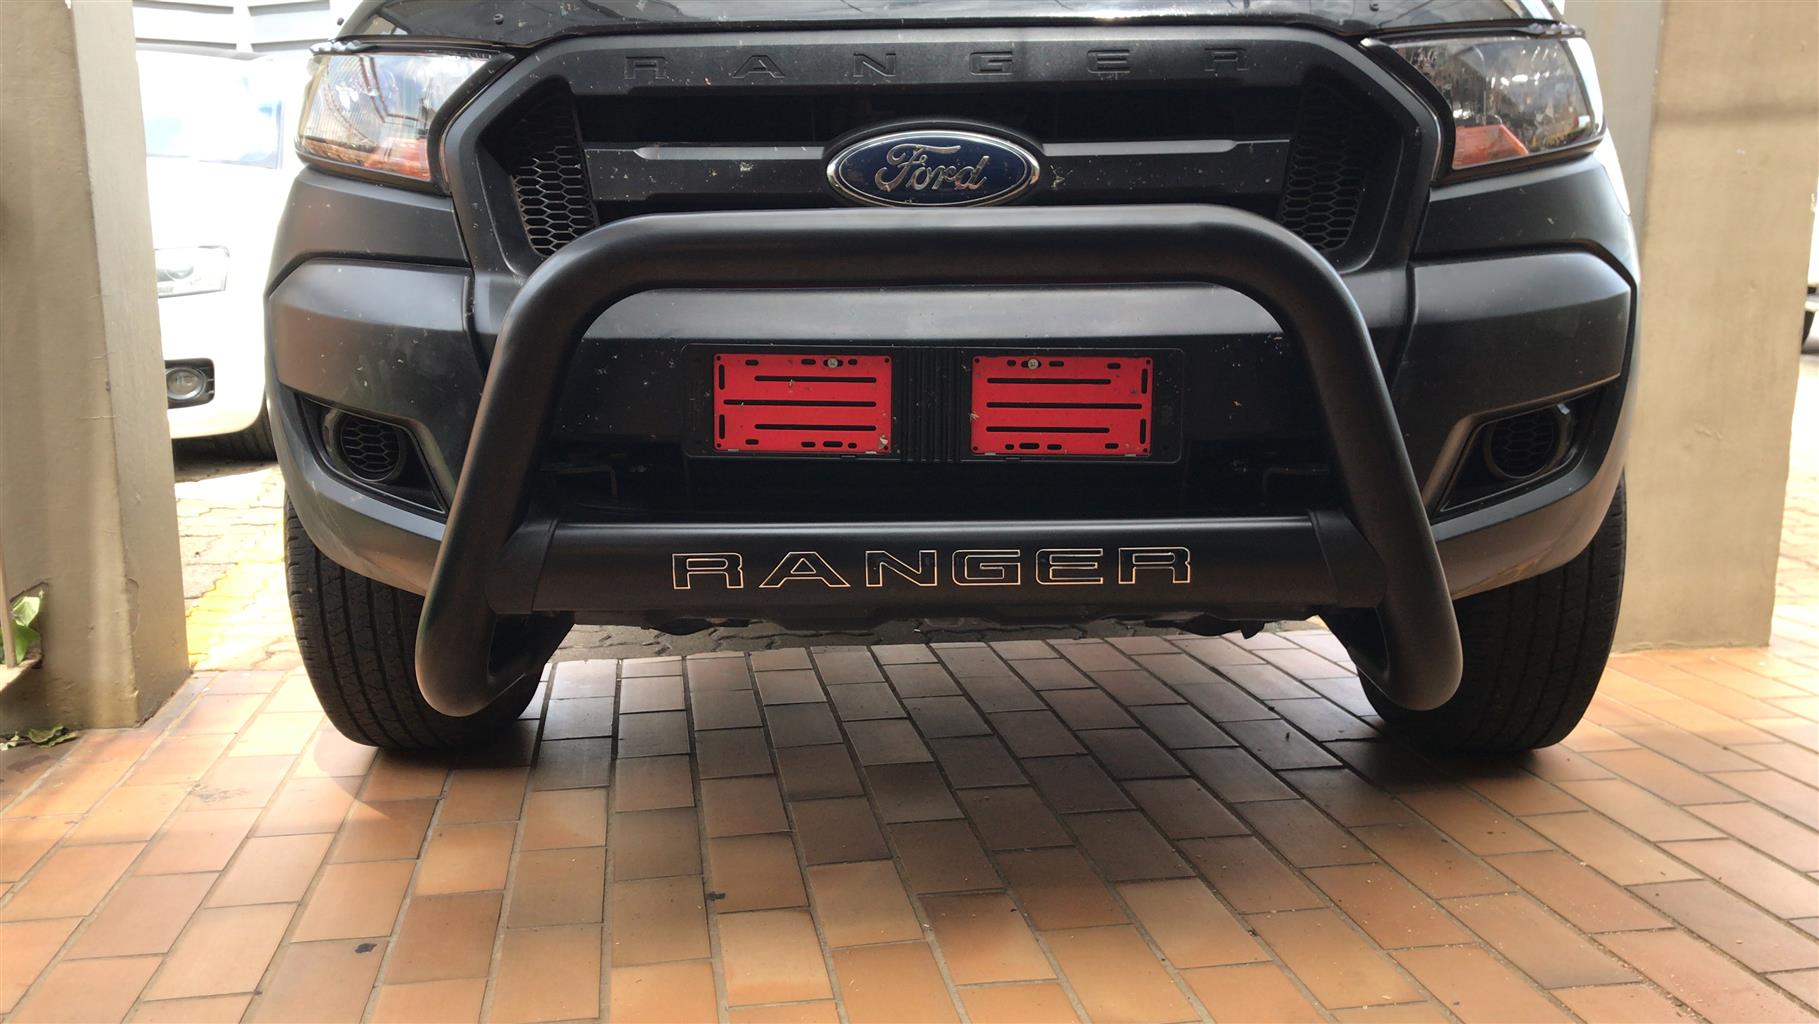 Ford Ranger Nudgebar